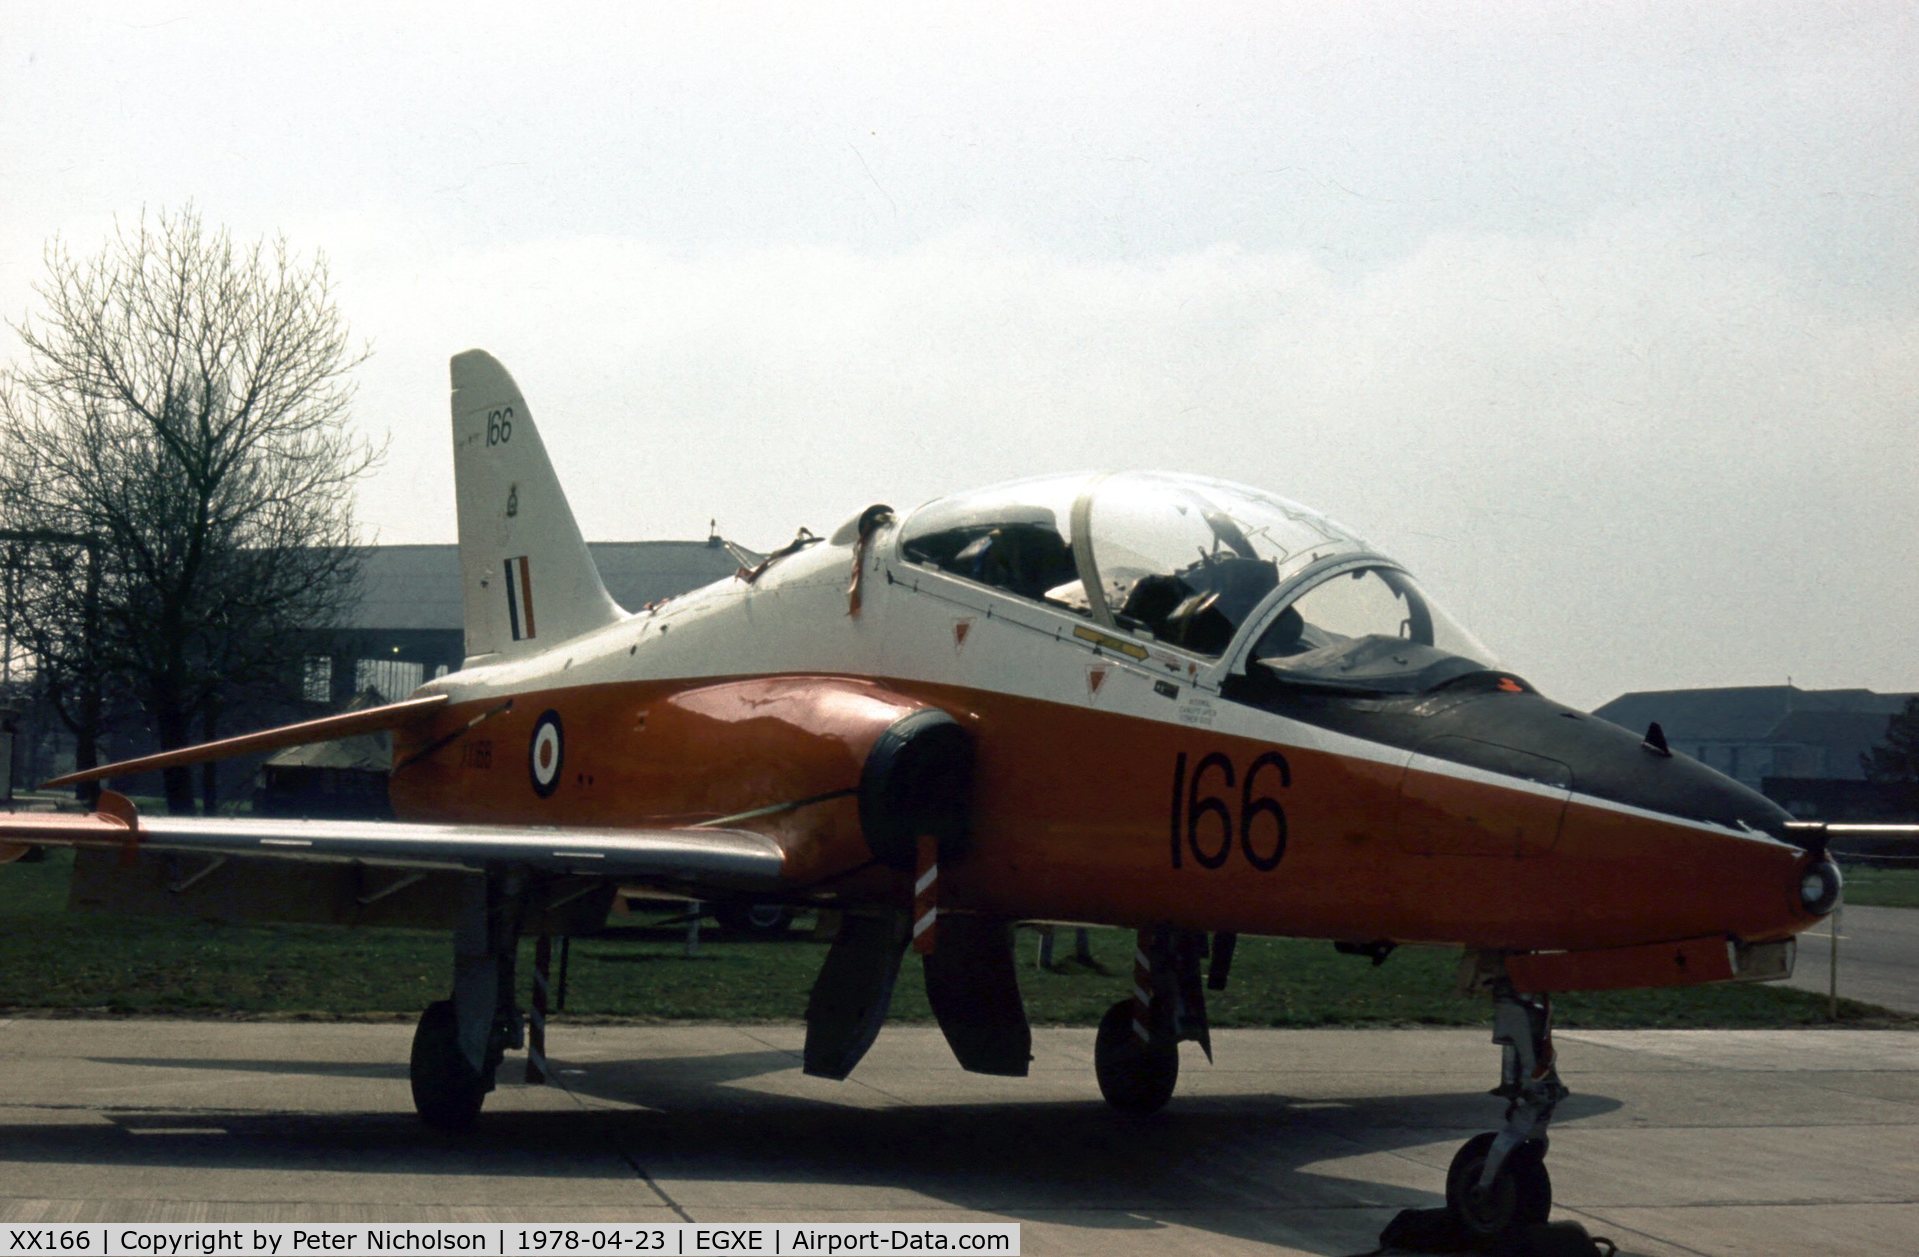 XX166, 1976 Hawker Siddeley Hawk T.1 C/N 013/312013, Hawk T.1 of 4 Flying Training School at the 1978 Leeming Open Day.